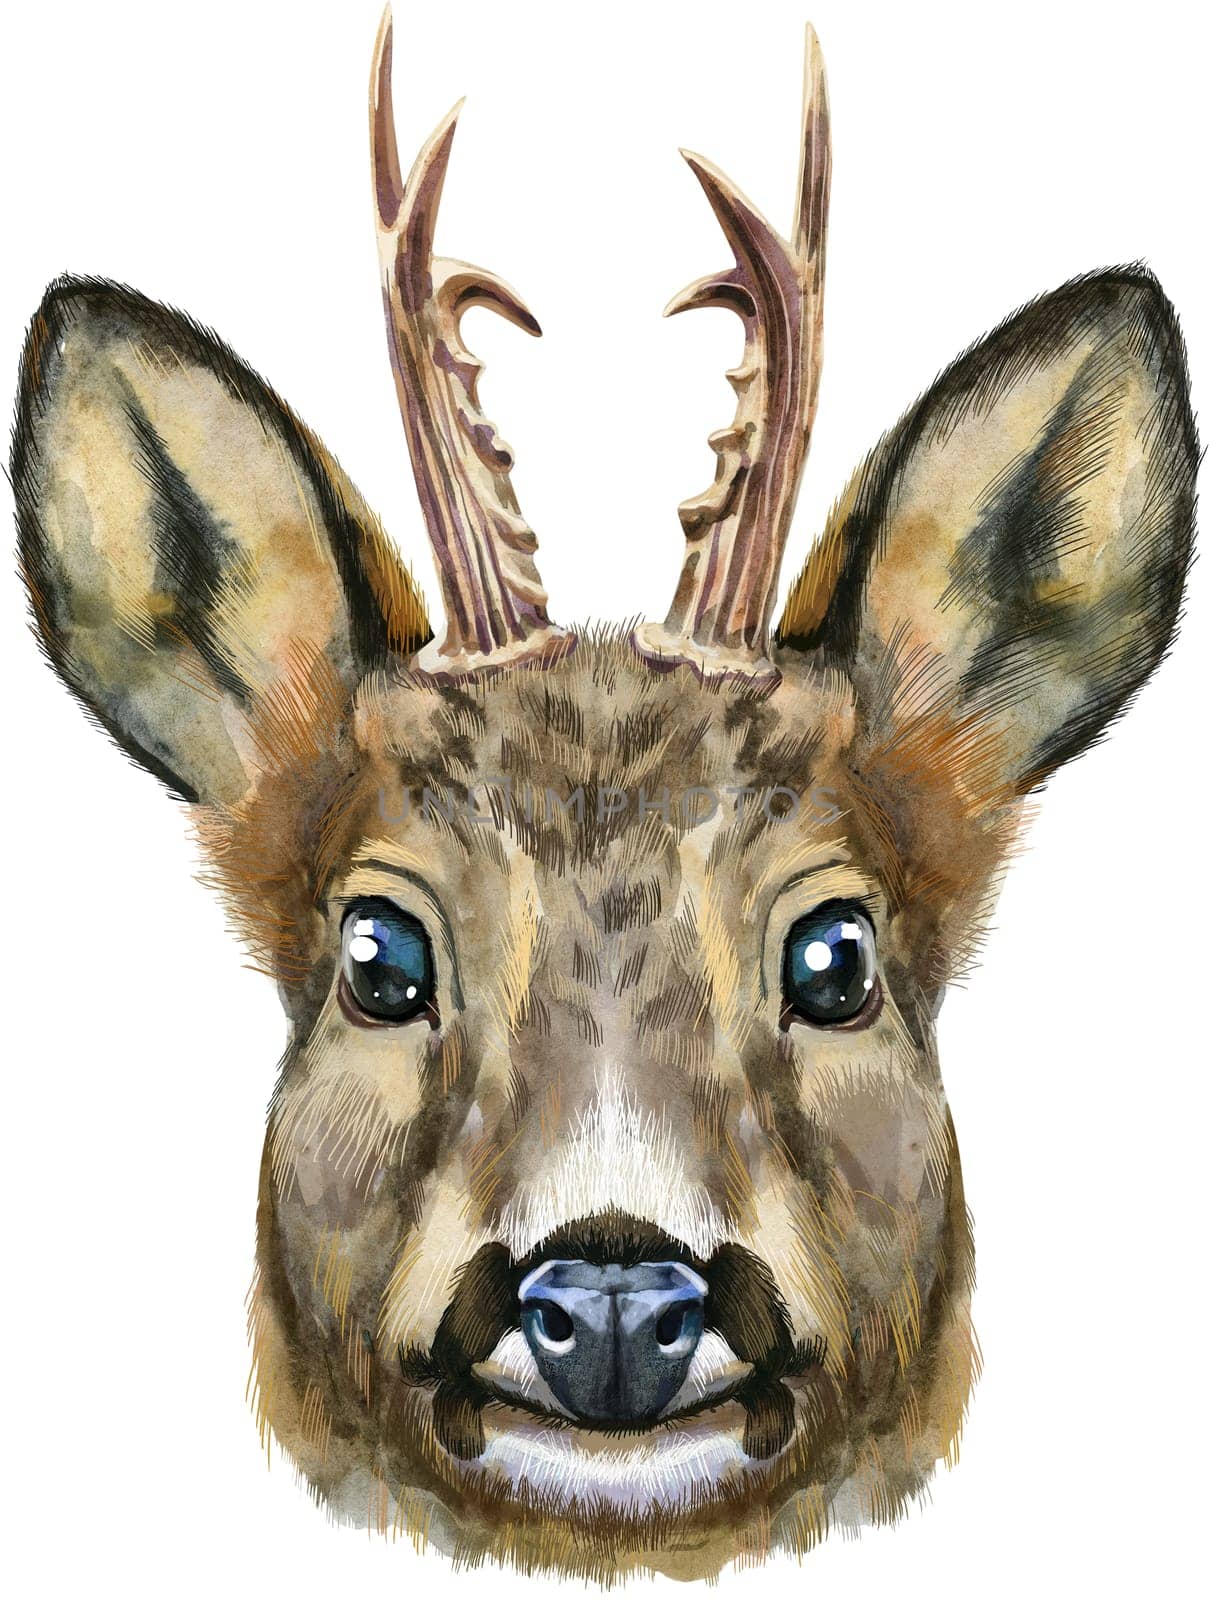 Watercolor drawing of the animal - roe deer, sketch